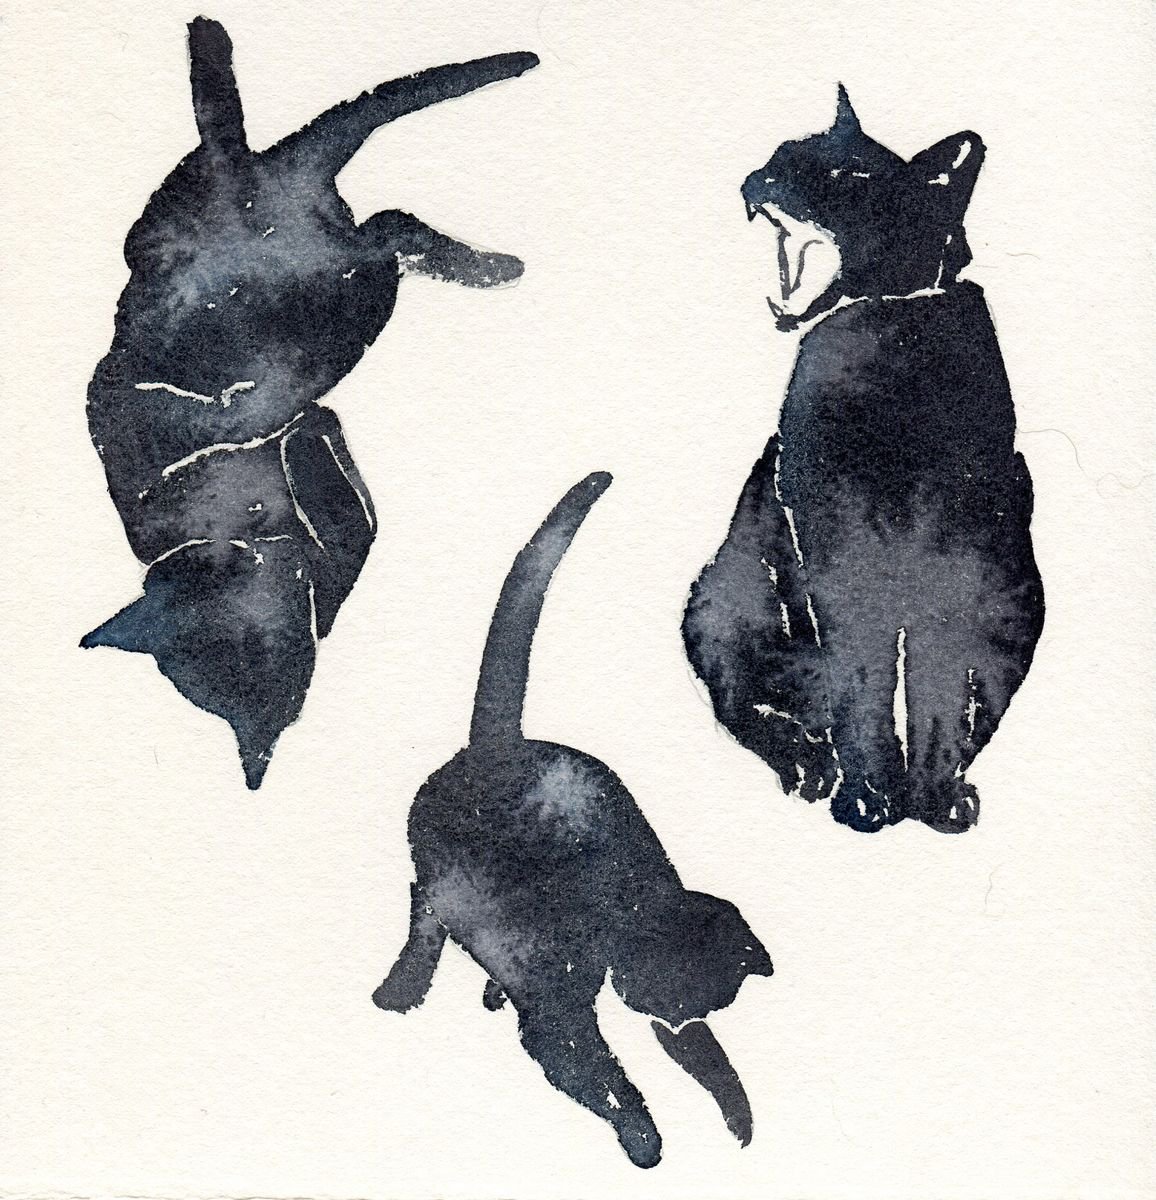 Three Black Cats by Hannah Clark